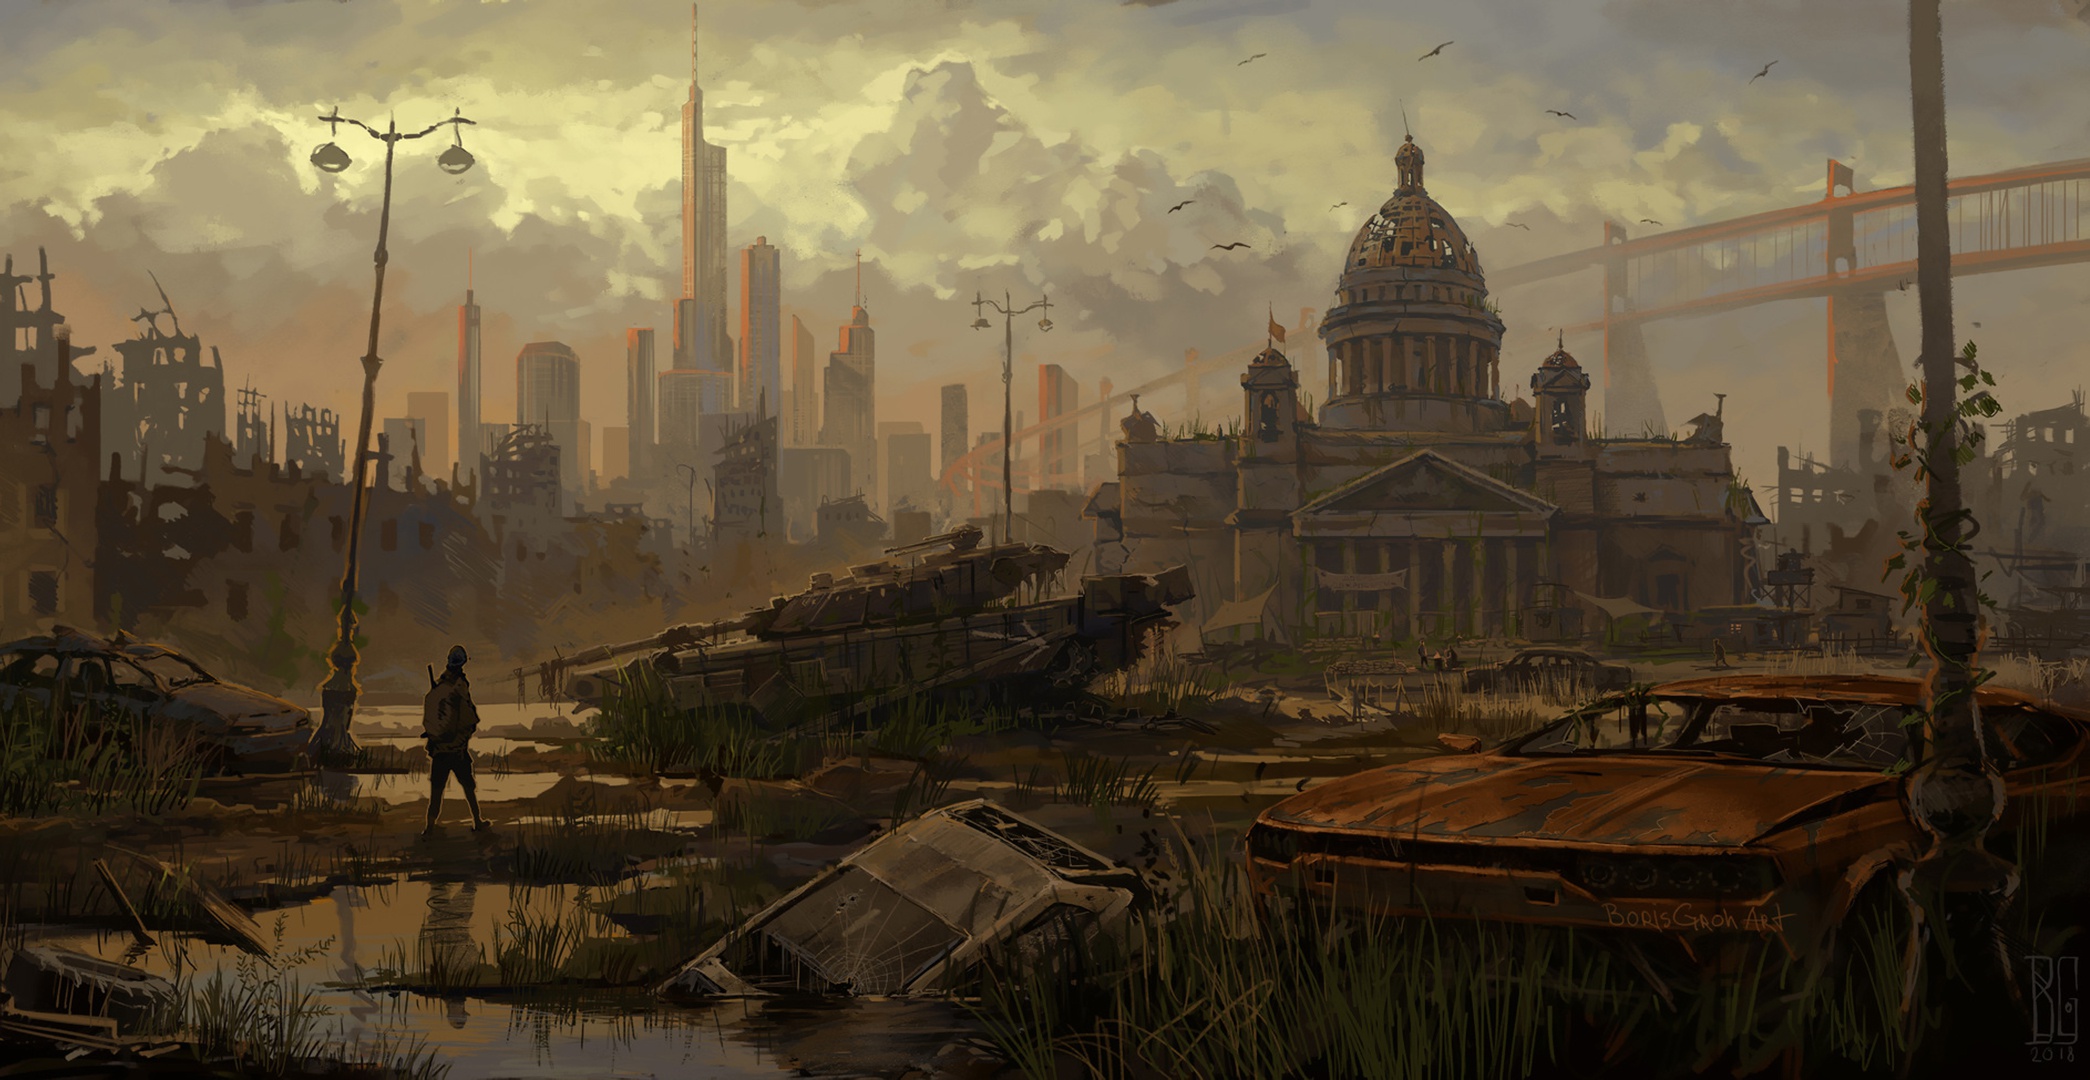 Futuristic Apocalyptic Cityscape Artwork Boris Groh 2090x1080